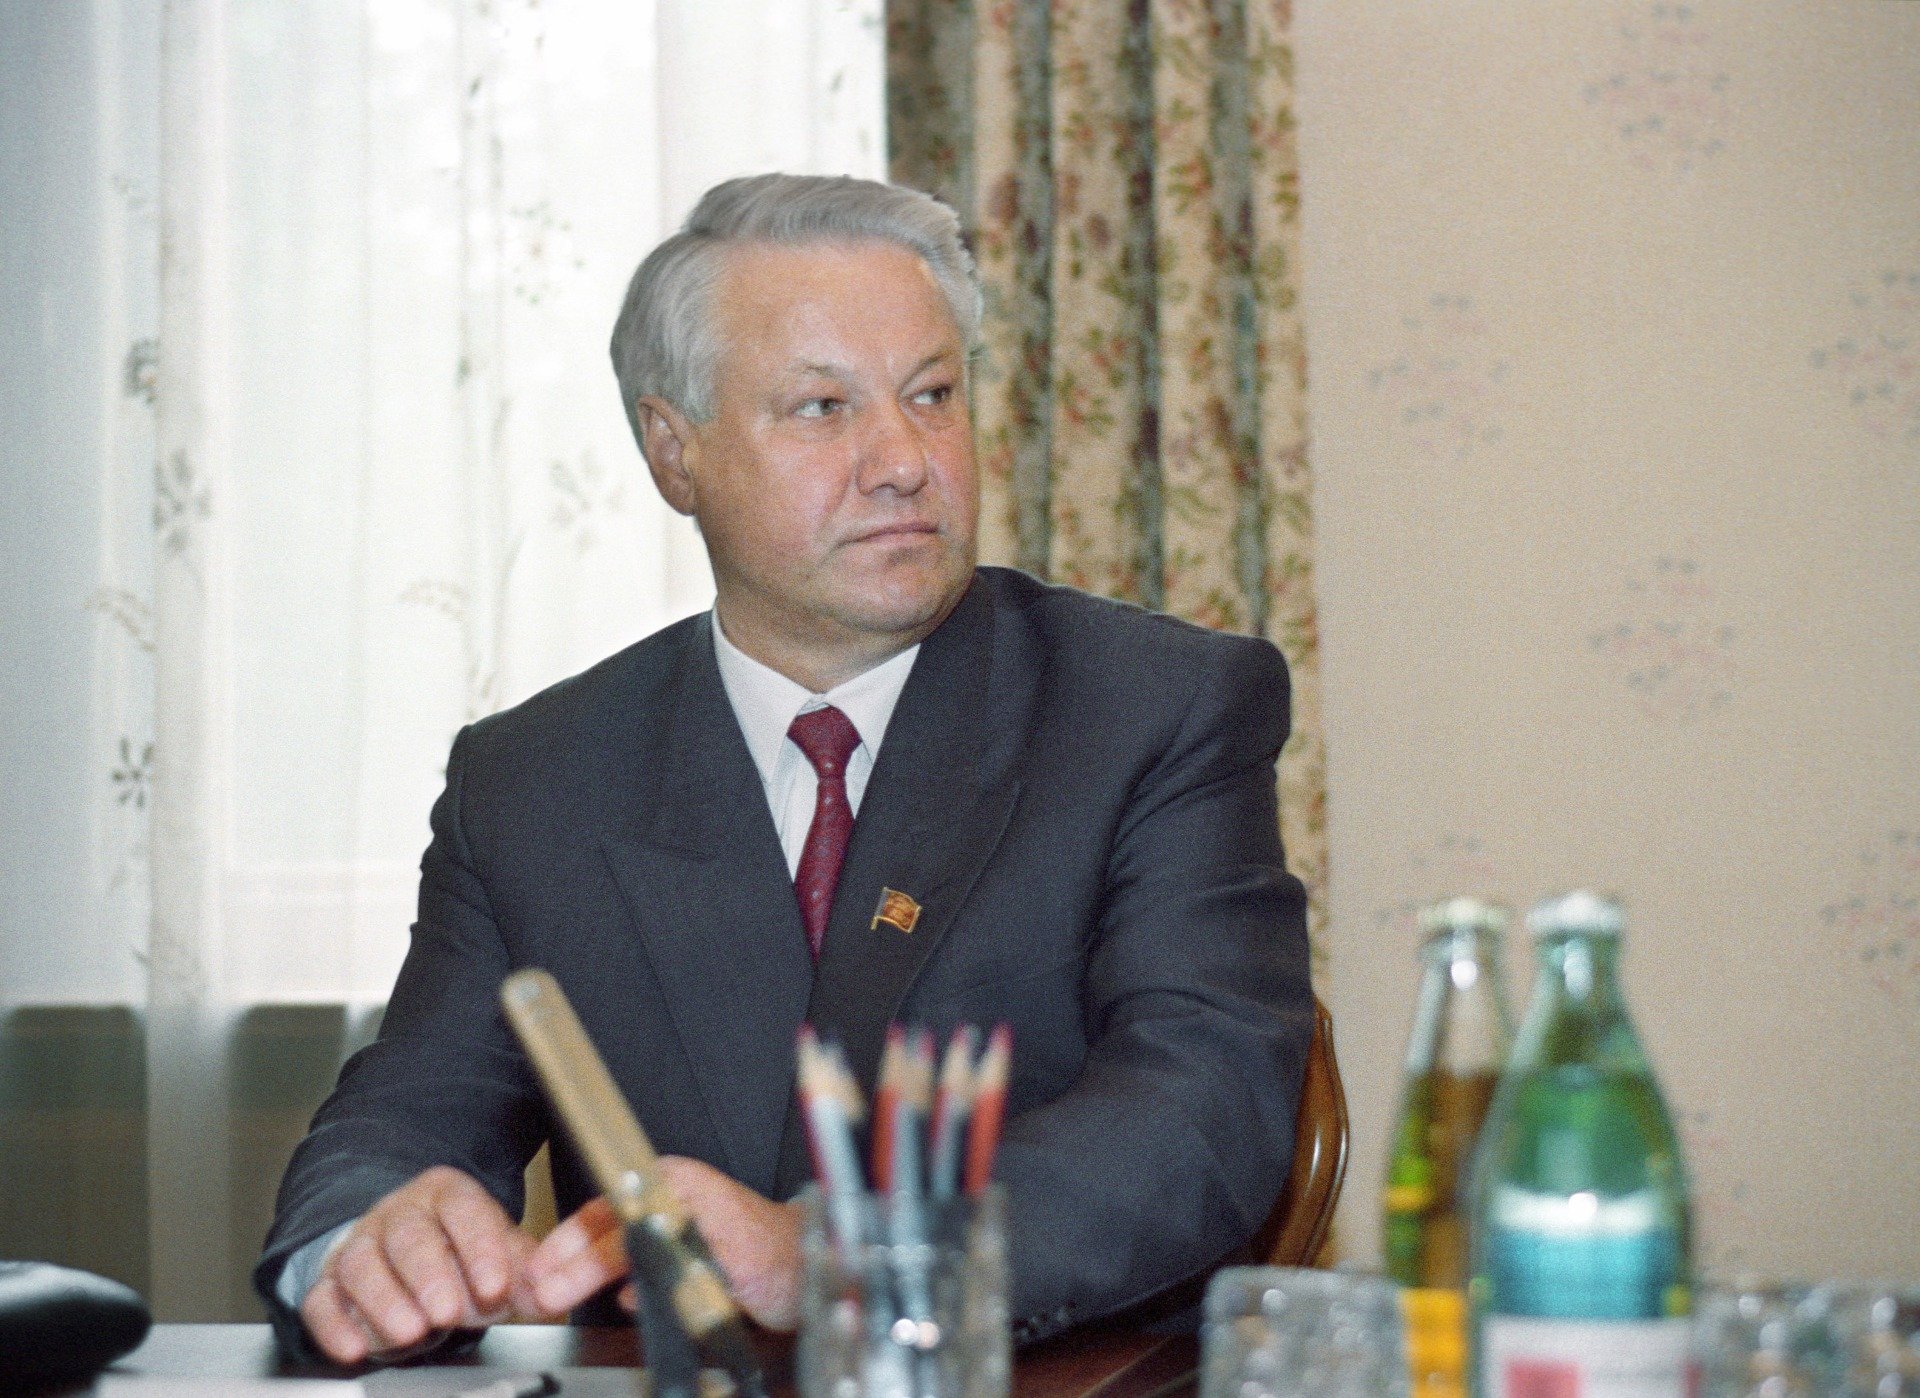 Борис Ельцин во время заседания подготовительного комитета в Ново-Огарево. Фото: Юрий Лизунов и Александр Чумичев /Фотохроника ТАСС